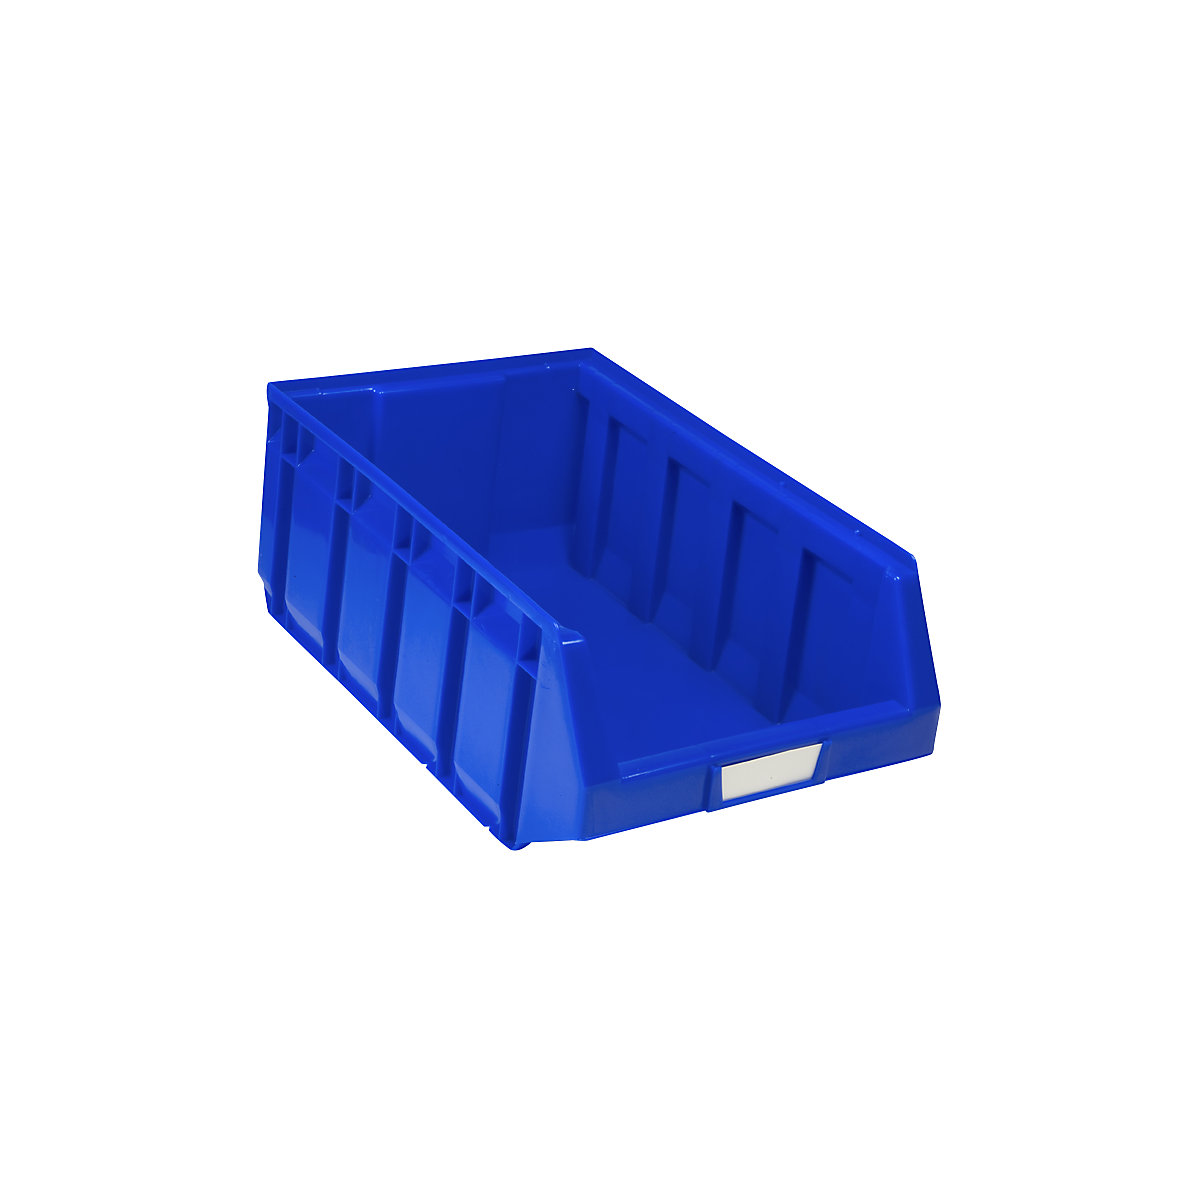 Sichtlagerkasten aus Polyethylen, LxBxH 485 x 298 x 189 mm, blau, VE 12 Stk-10